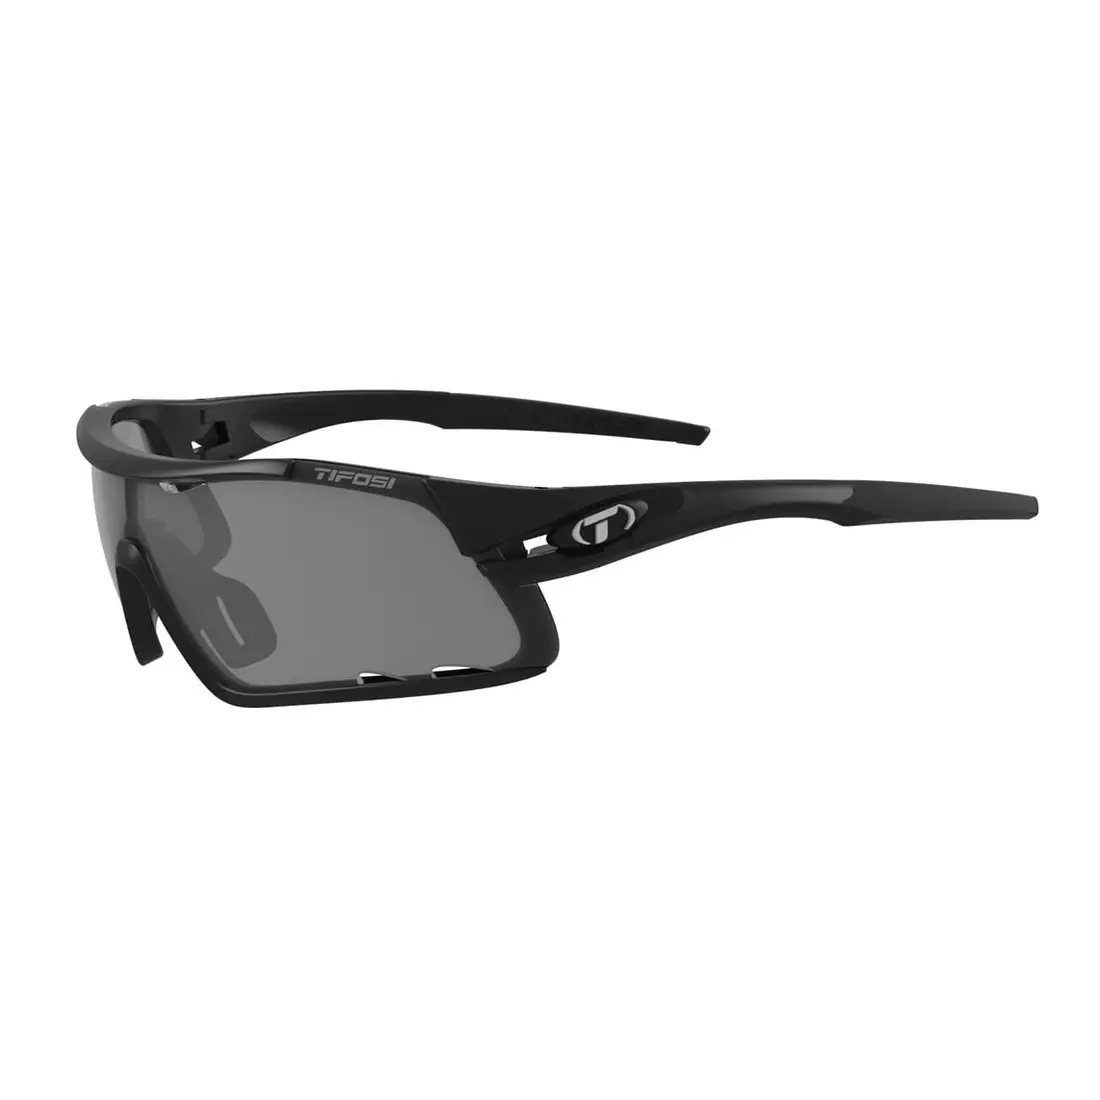 Sportovní brýle s výměnnými čočkami TIFOSI DAVOS matte black TFI-1460100101